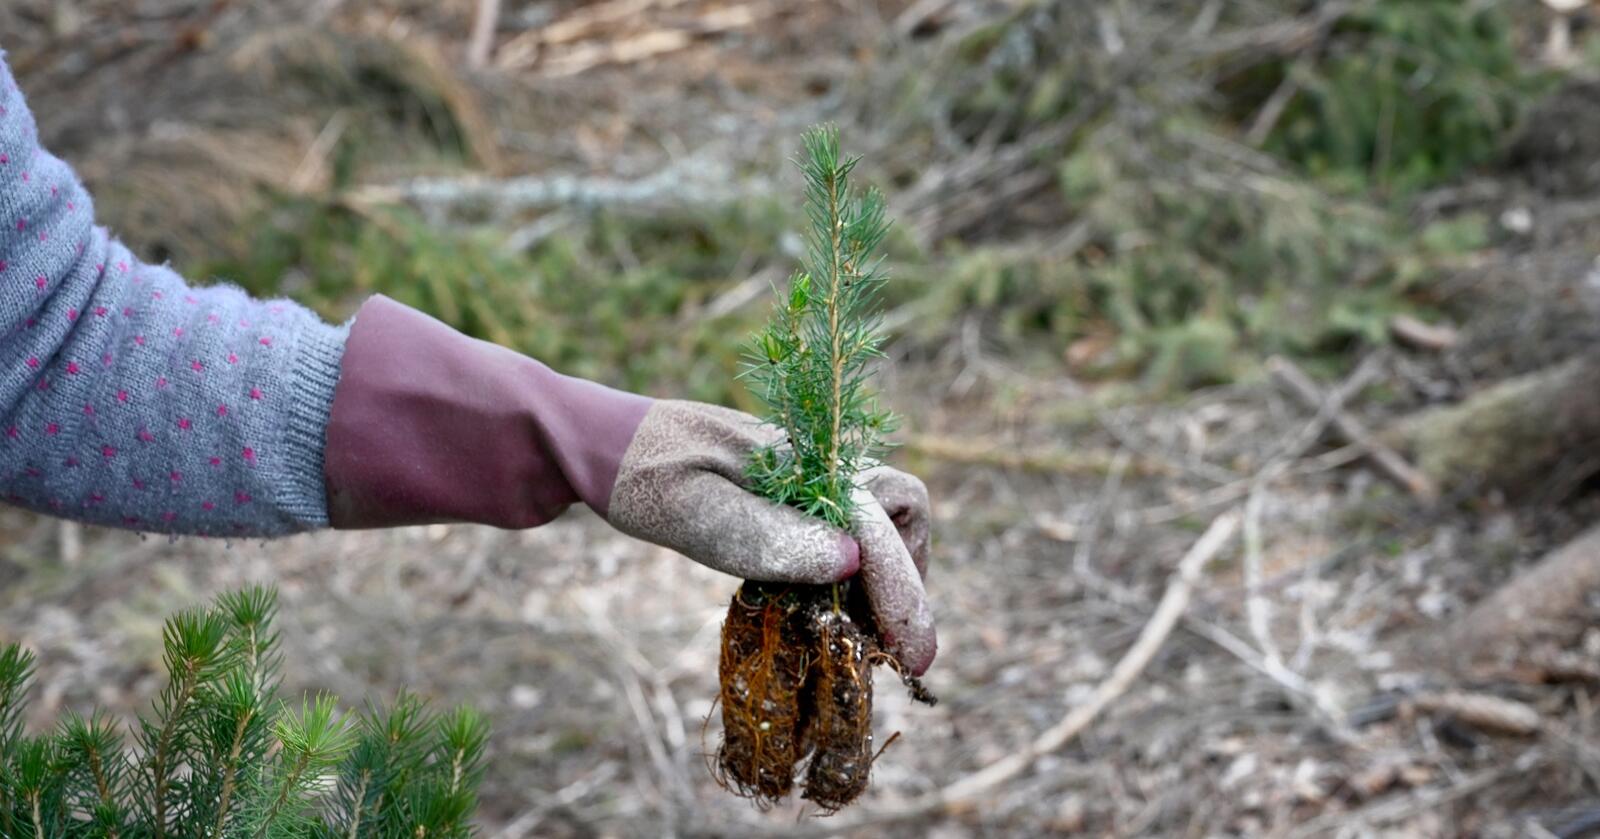 Regjeringen innrømmer at mindre penger til tiltak som skogplanting kan føre til redusert opptak av CO2. Foto: Mariann Tvete